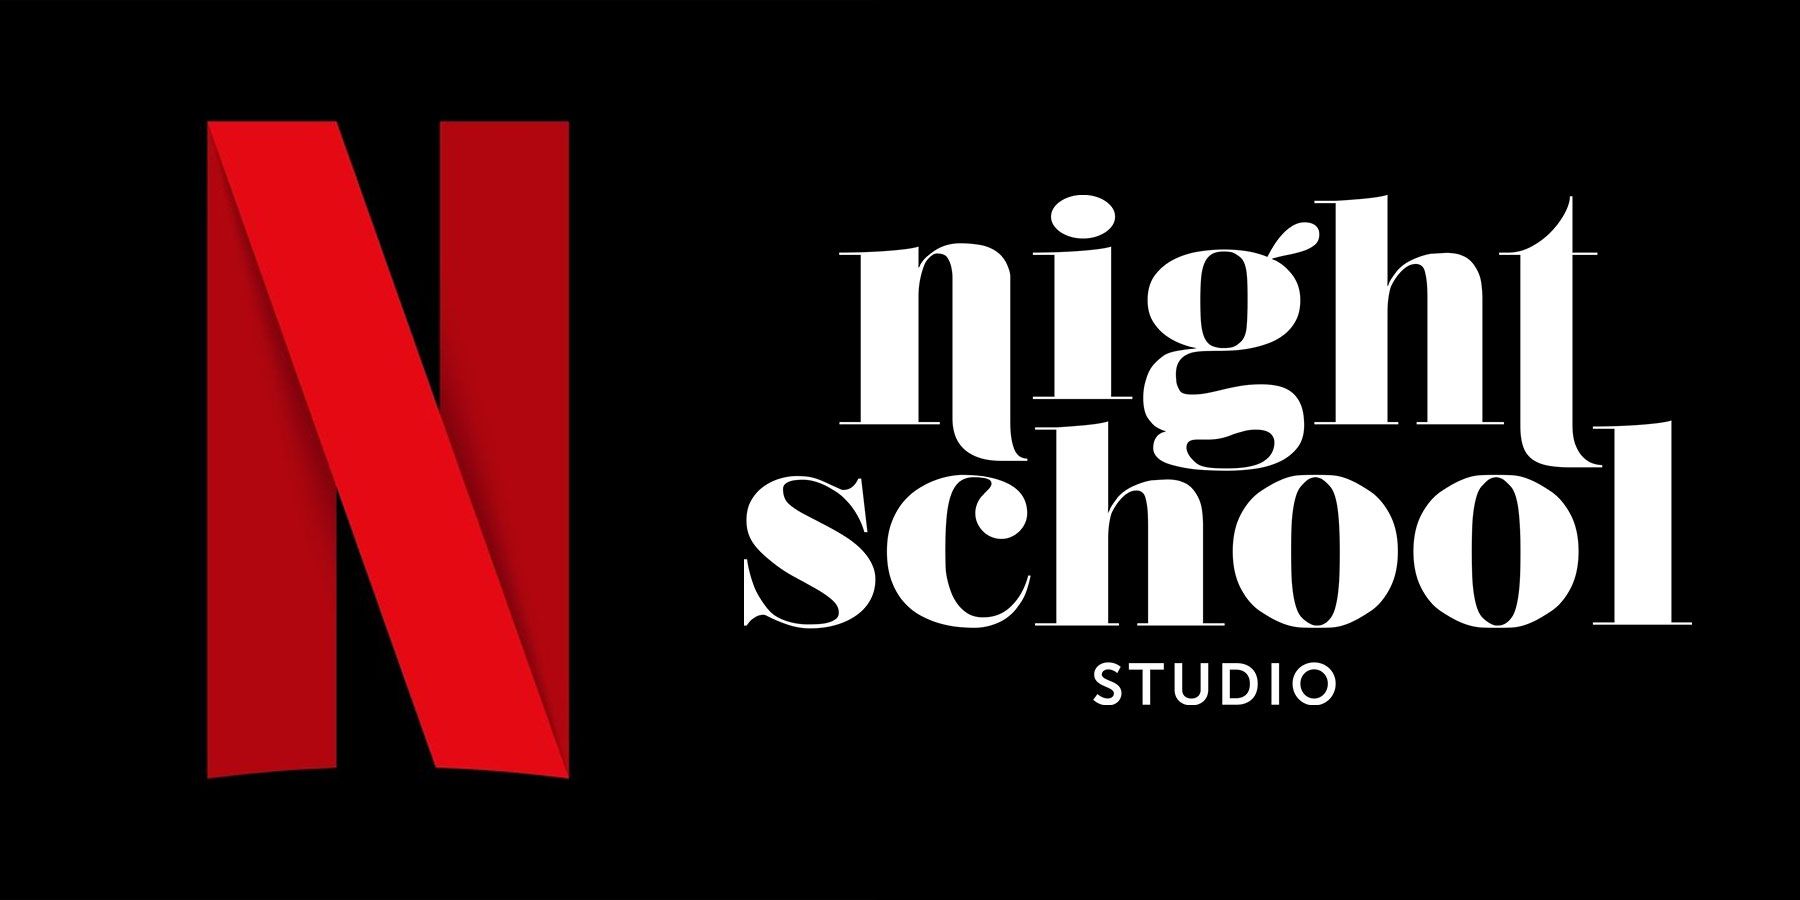 Netflix verwerft Night School Studio is een goed teken voor zijn streamingambities